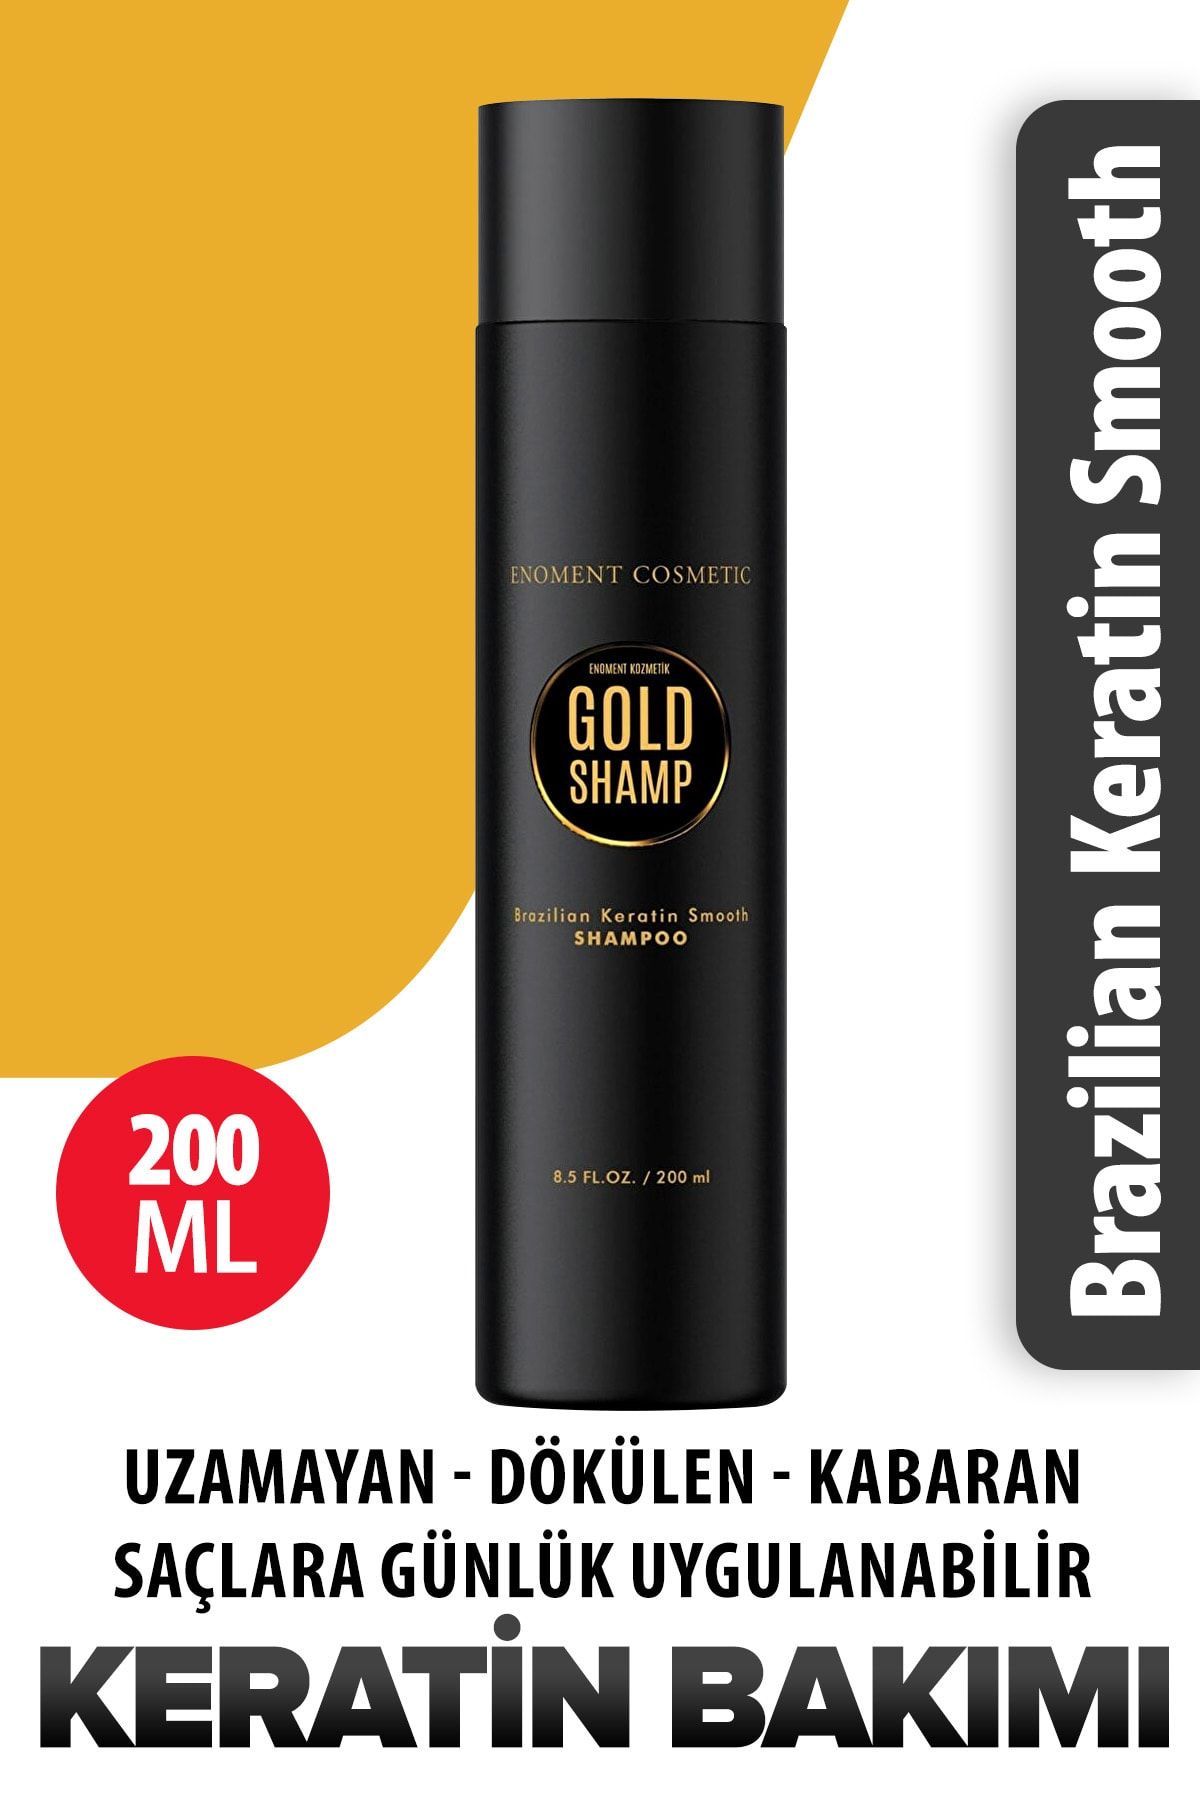 Enoment Kozmetik Goldshamp Keratin Özlü Şampuan 200 ml - Enoment Cosmetic